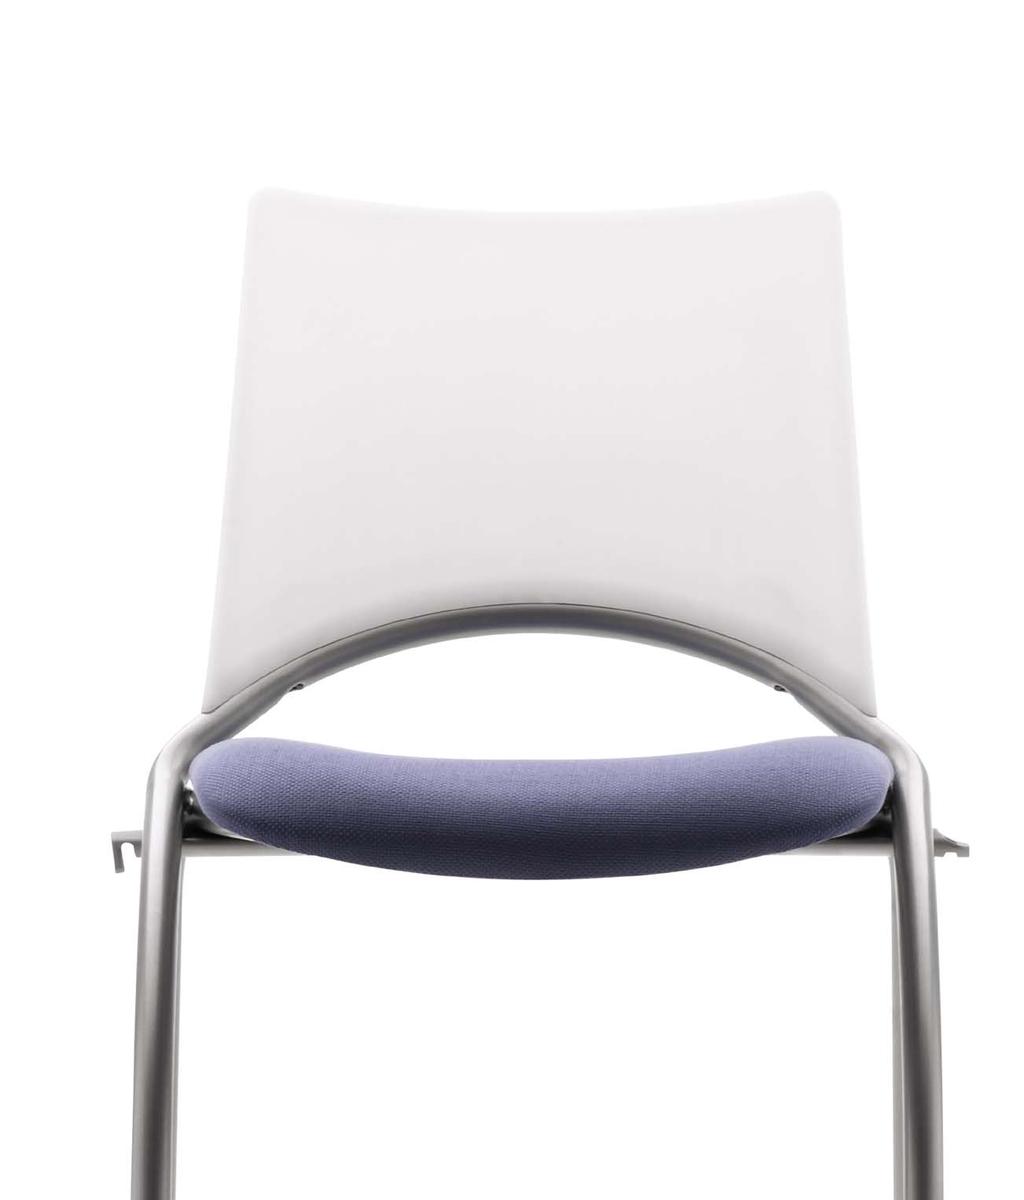 WAP renueva el concepto de la silla polivalente aportando un toque muy actual, lo que se pone de manifiesto en las áreas de trabajo.